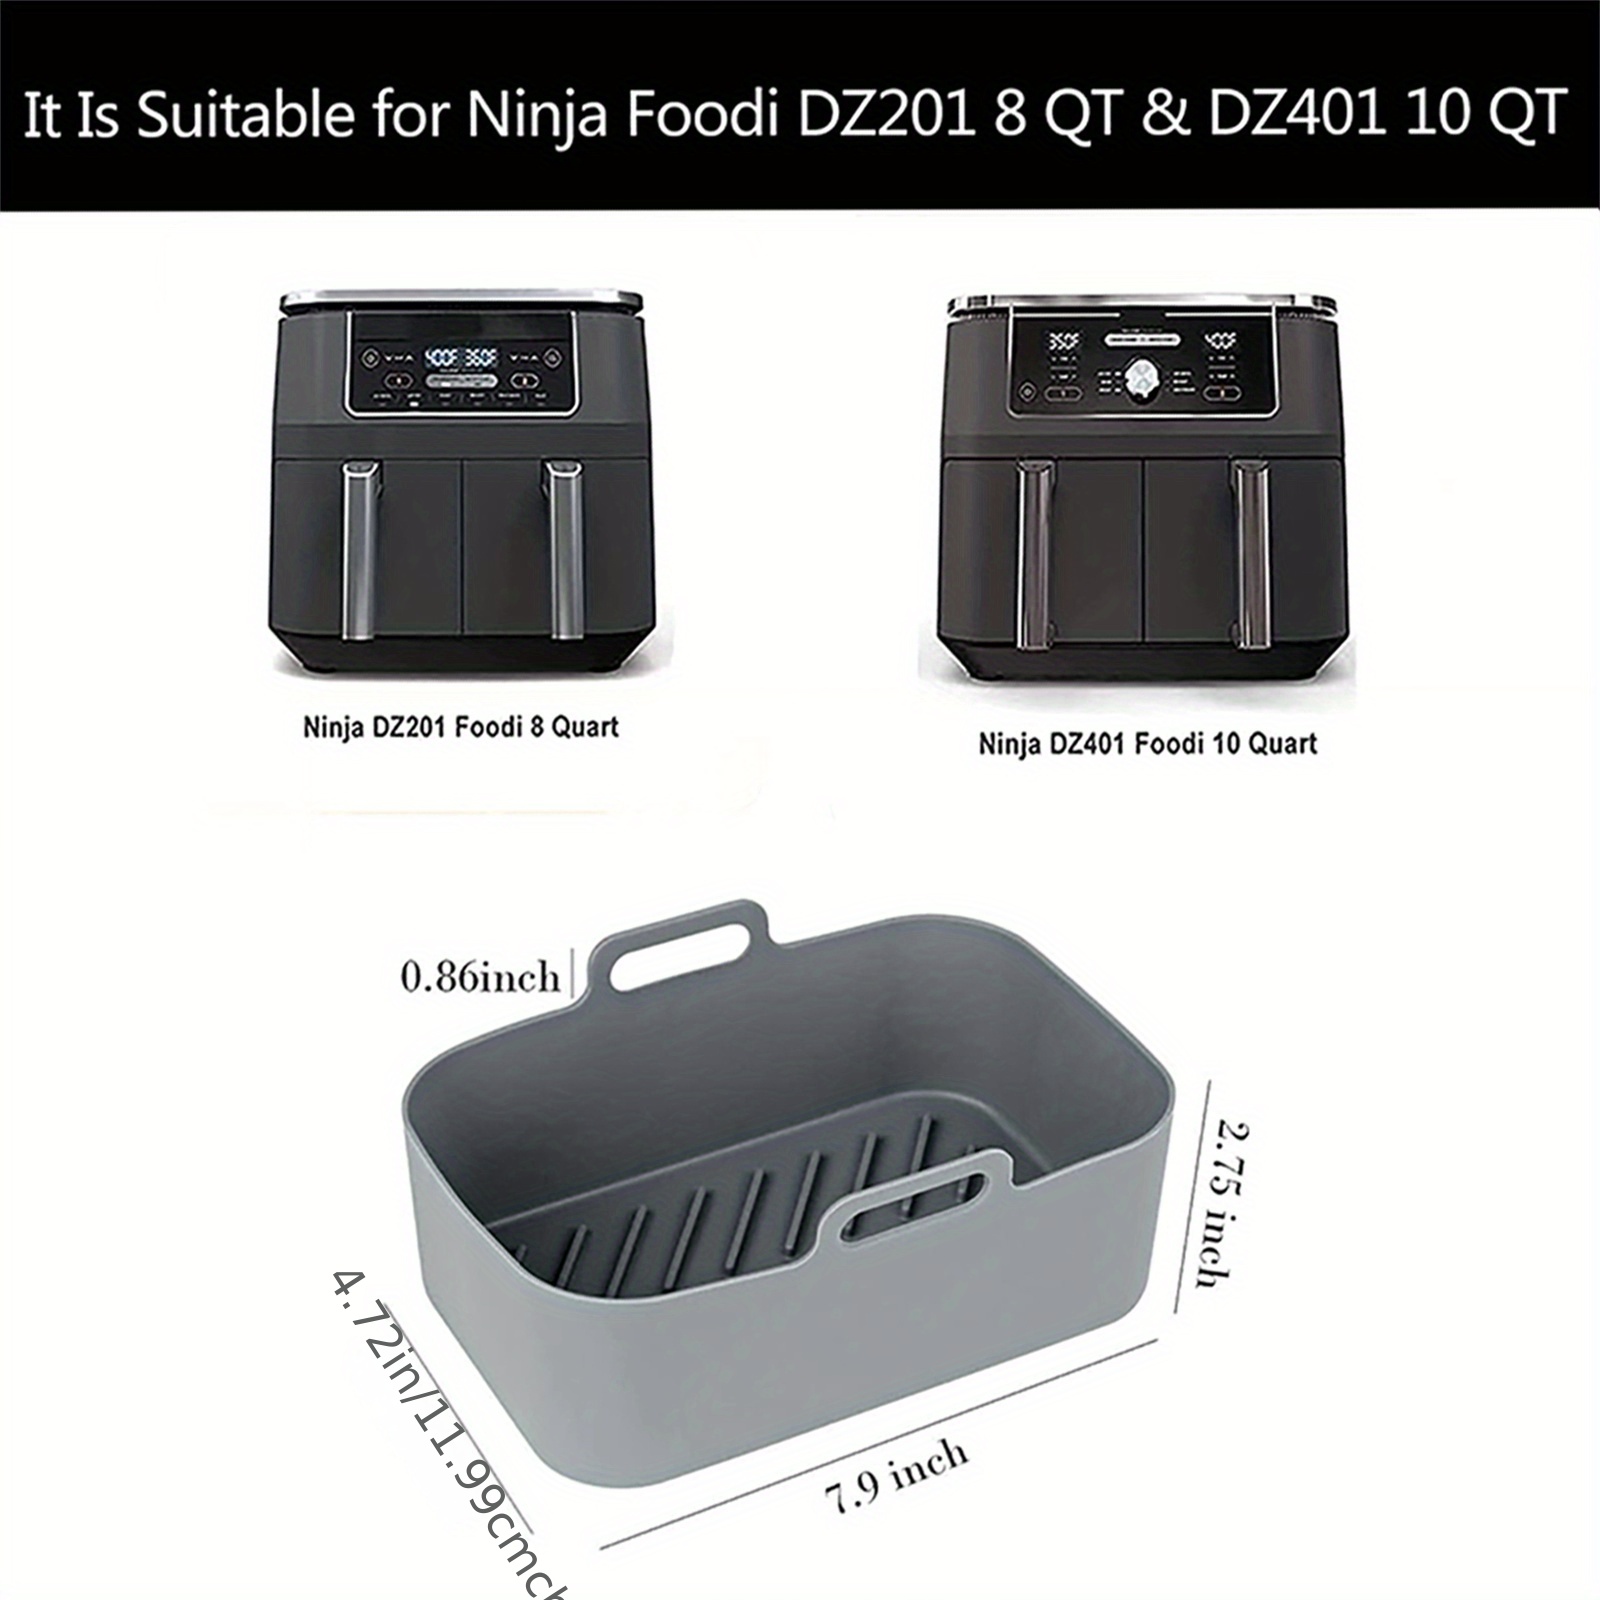 Ninja Foodi 2 Basket Air Fryer review